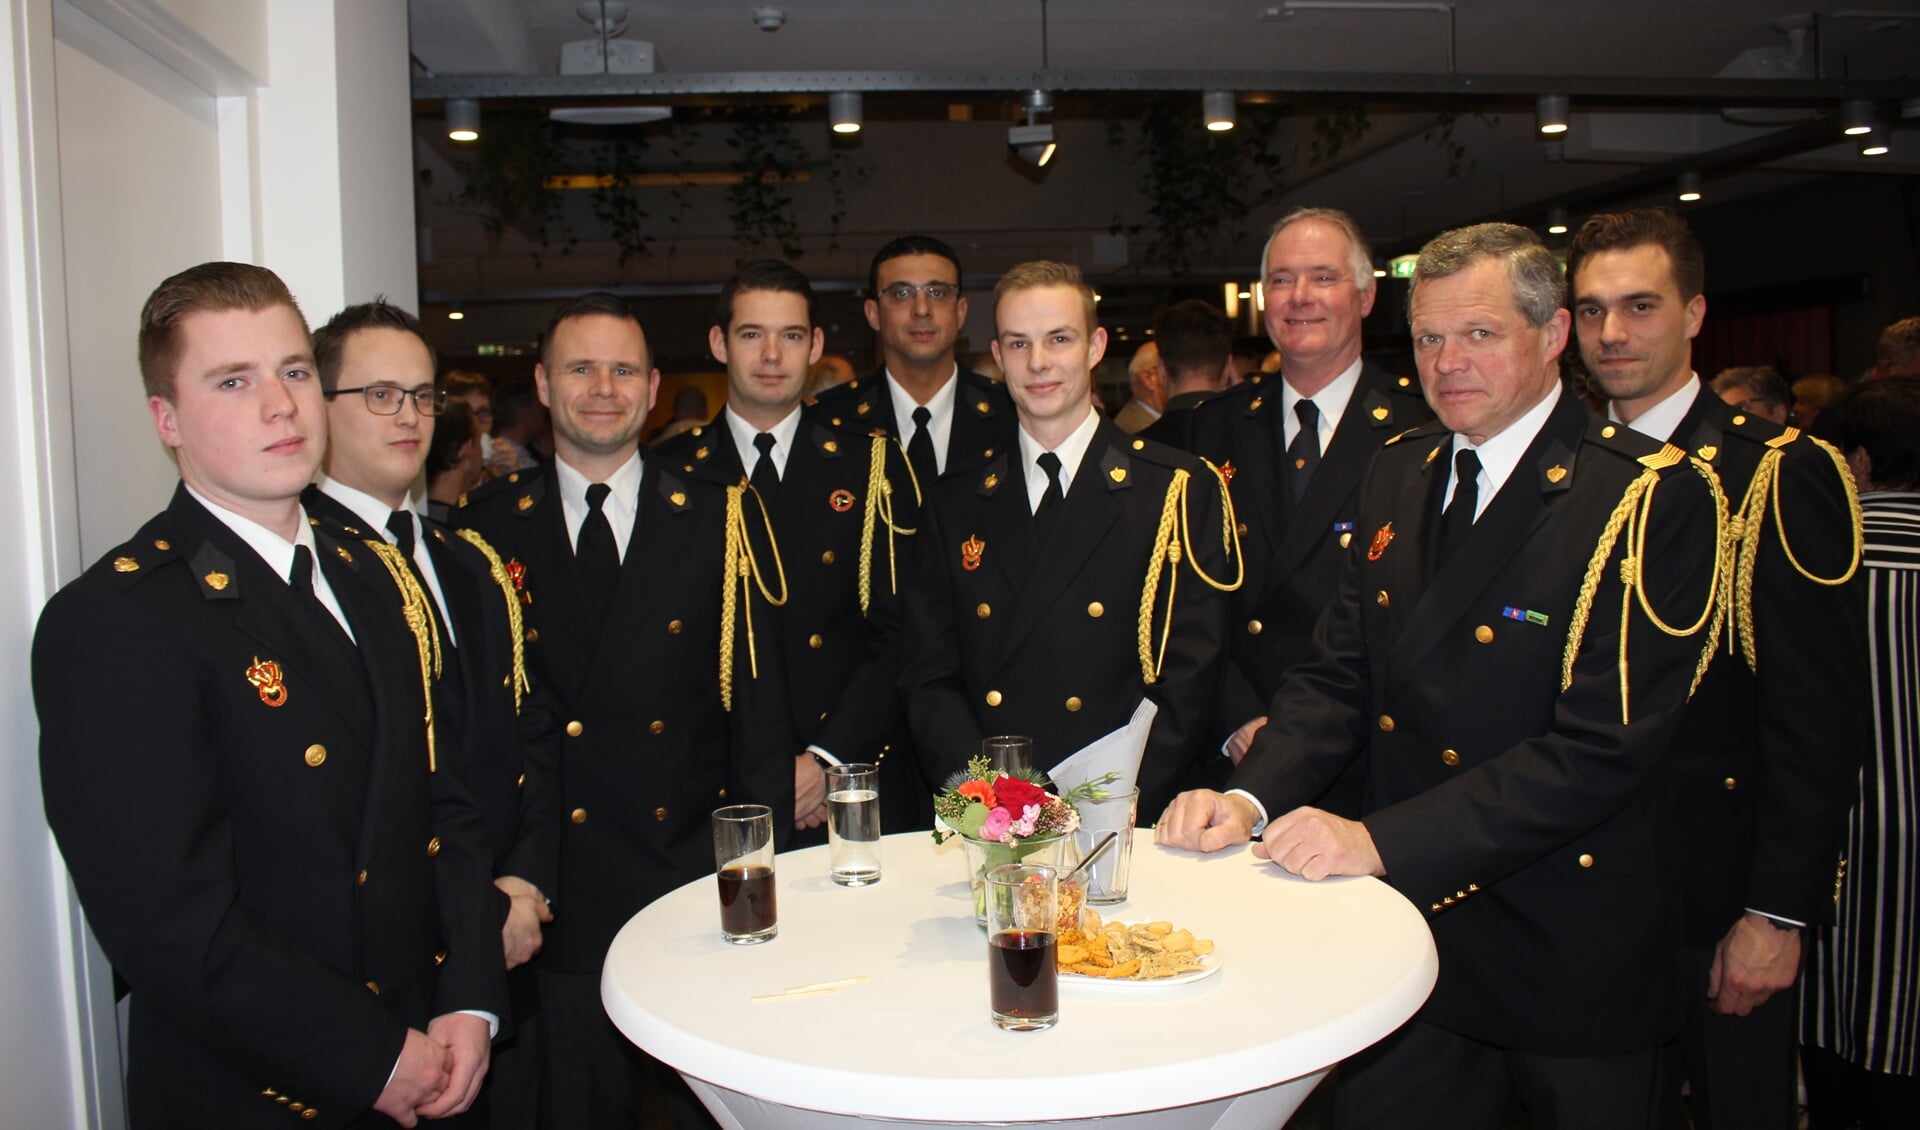 De delegatie van de Hillegomse Brandweer is ook vertegenwoordigd. | Foto: Annemiek Cornelissen